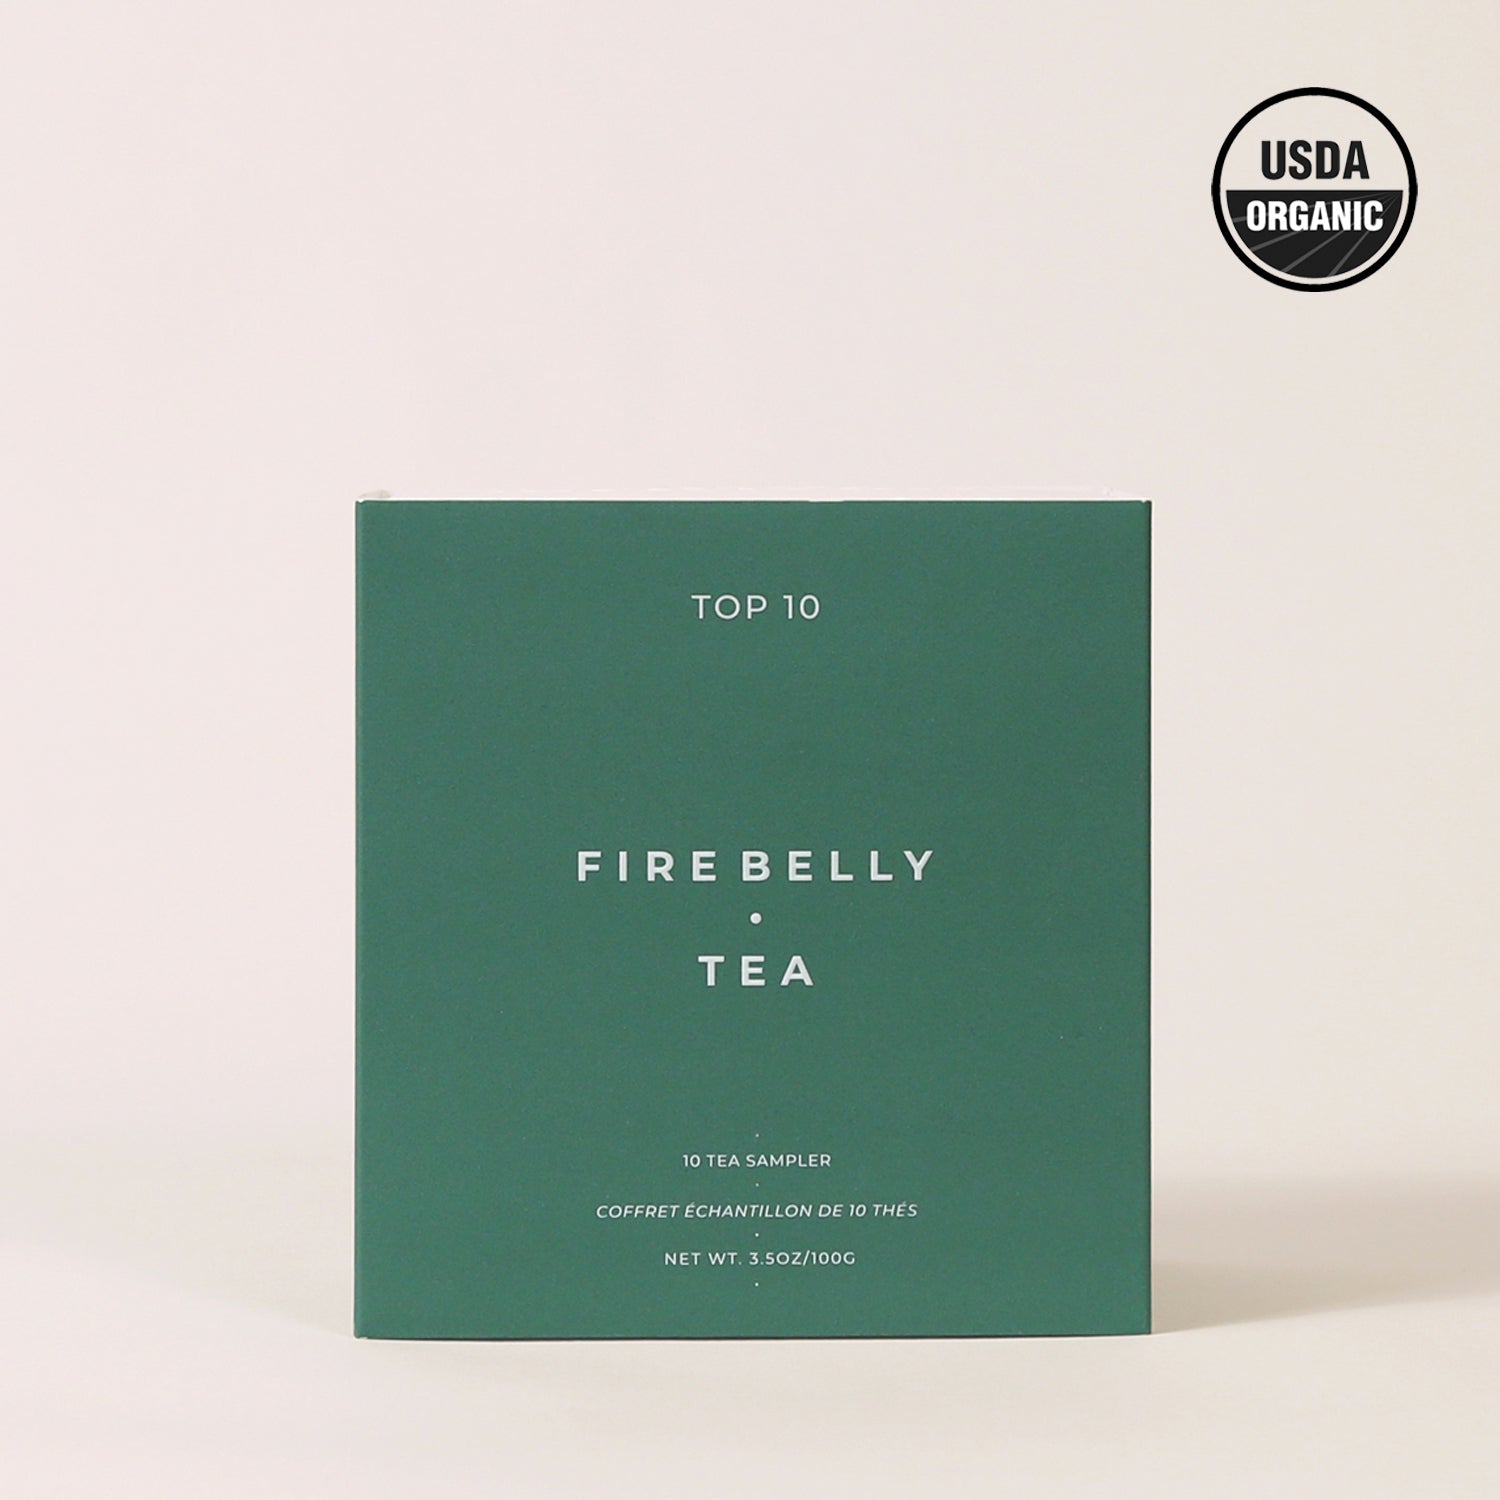 Top 10 - Firebelly Tea